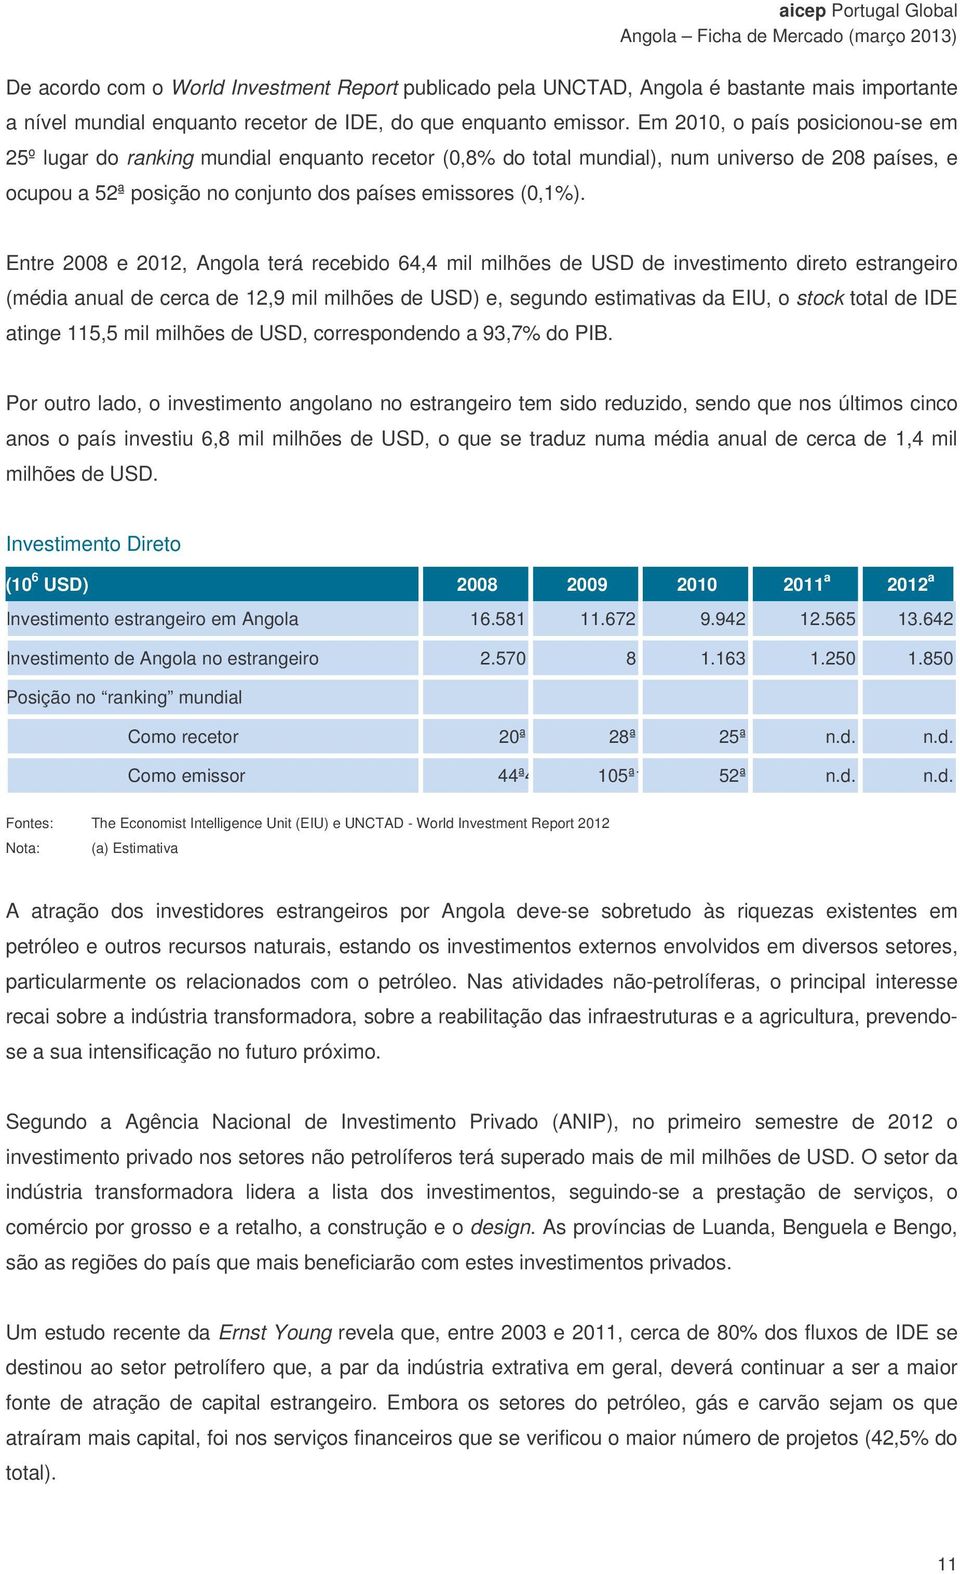 Entre 2008 e 2012, Angola terá recebido 64,4 mil milhões de USD de investimento direto estrangeiro (média anual de cerca de 12,9 mil milhões de USD) e, segundo estimativas da EIU, o stock total de